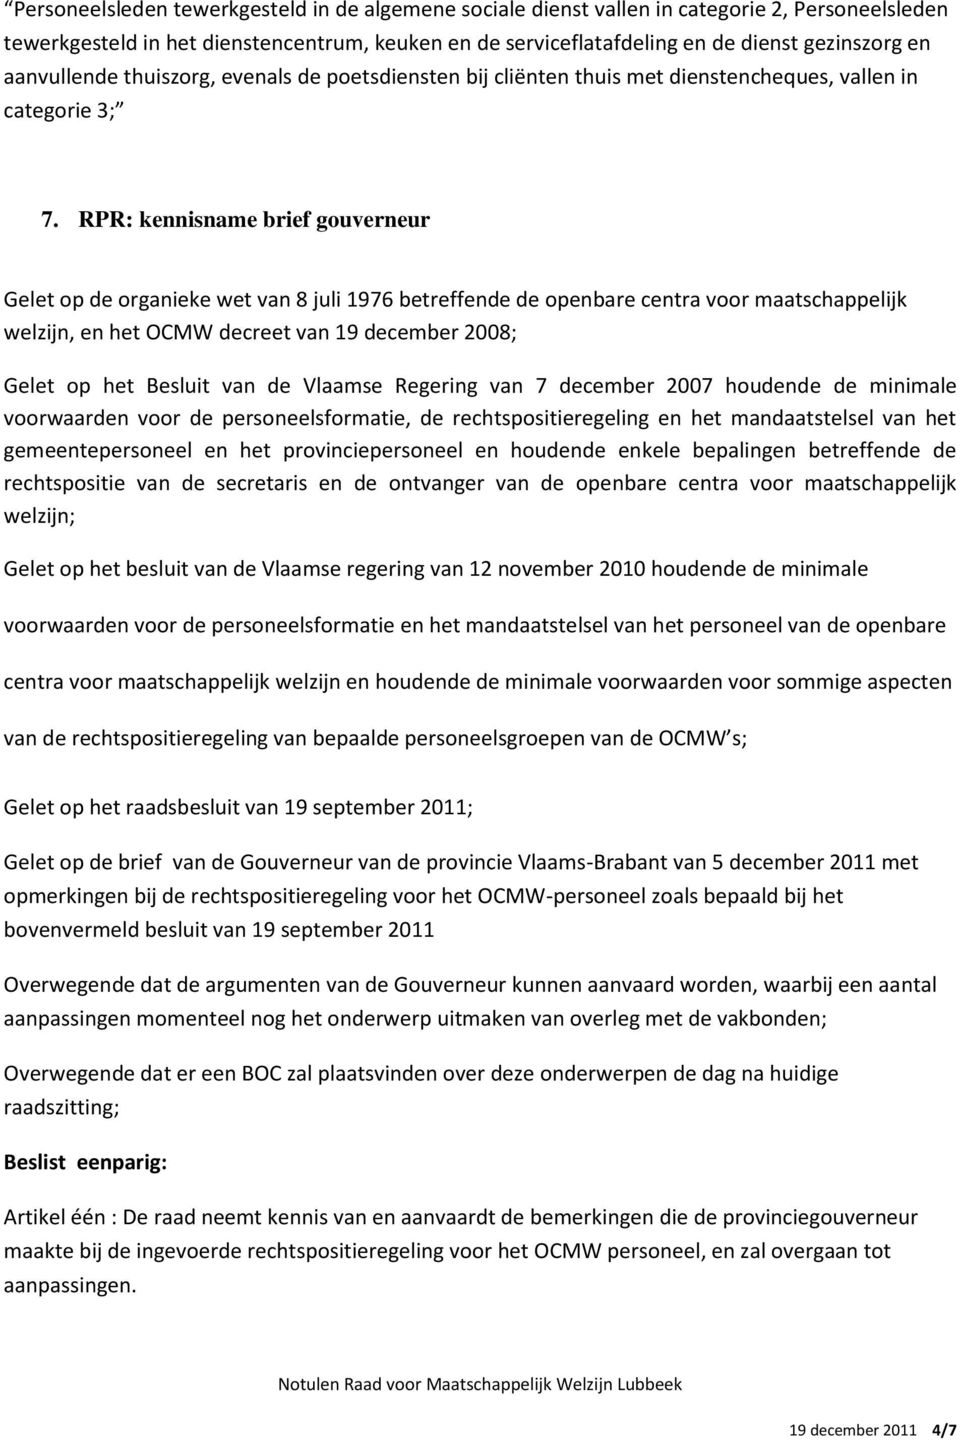 RPR: kennisname brief gouverneur Gelet op het Besluit van de Vlaamse Regering van 7 december 2007 houdende de minimale voorwaarden voor de personeelsformatie, de rechtspositieregeling en het